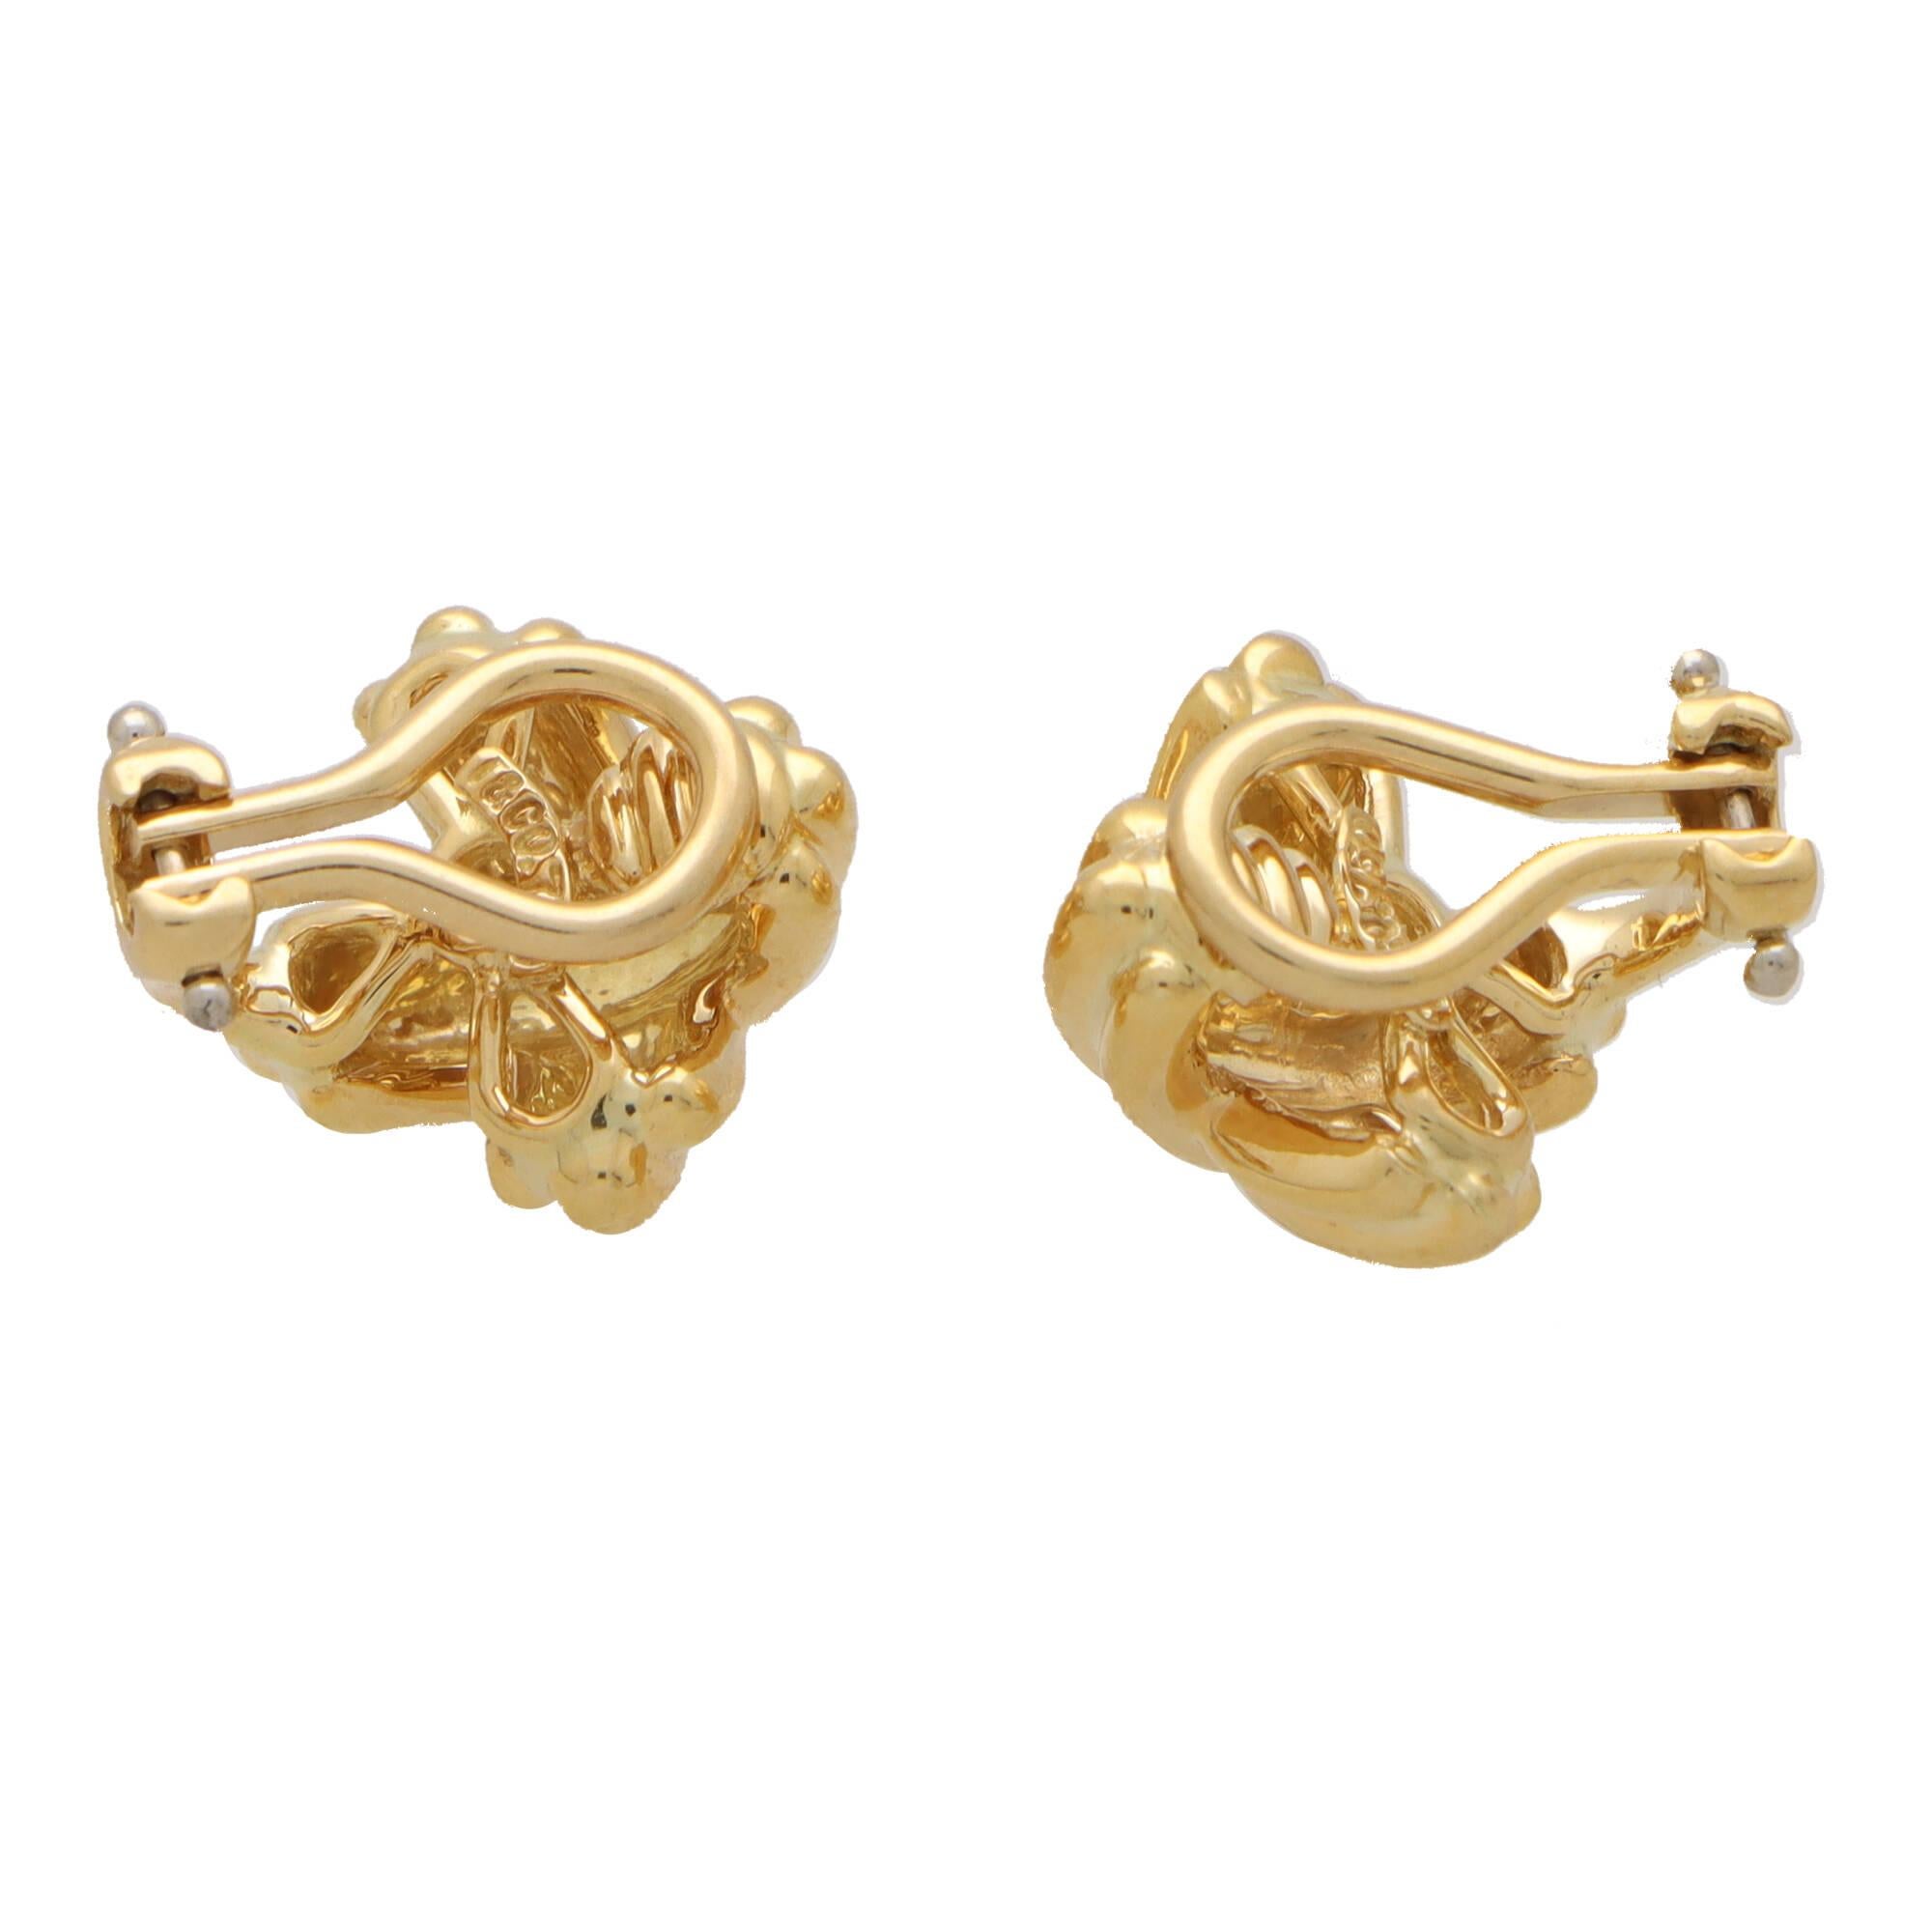 Magnifique paire de boucles d'oreilles en or jaune 18 carats signée Tiffany & Co.

Chaque boucle d'oreille représente le motif emblématique de la croix de Tiffany, composé de bandes d'or jaune poli. Les boucles d'oreilles sont fixées au revers par